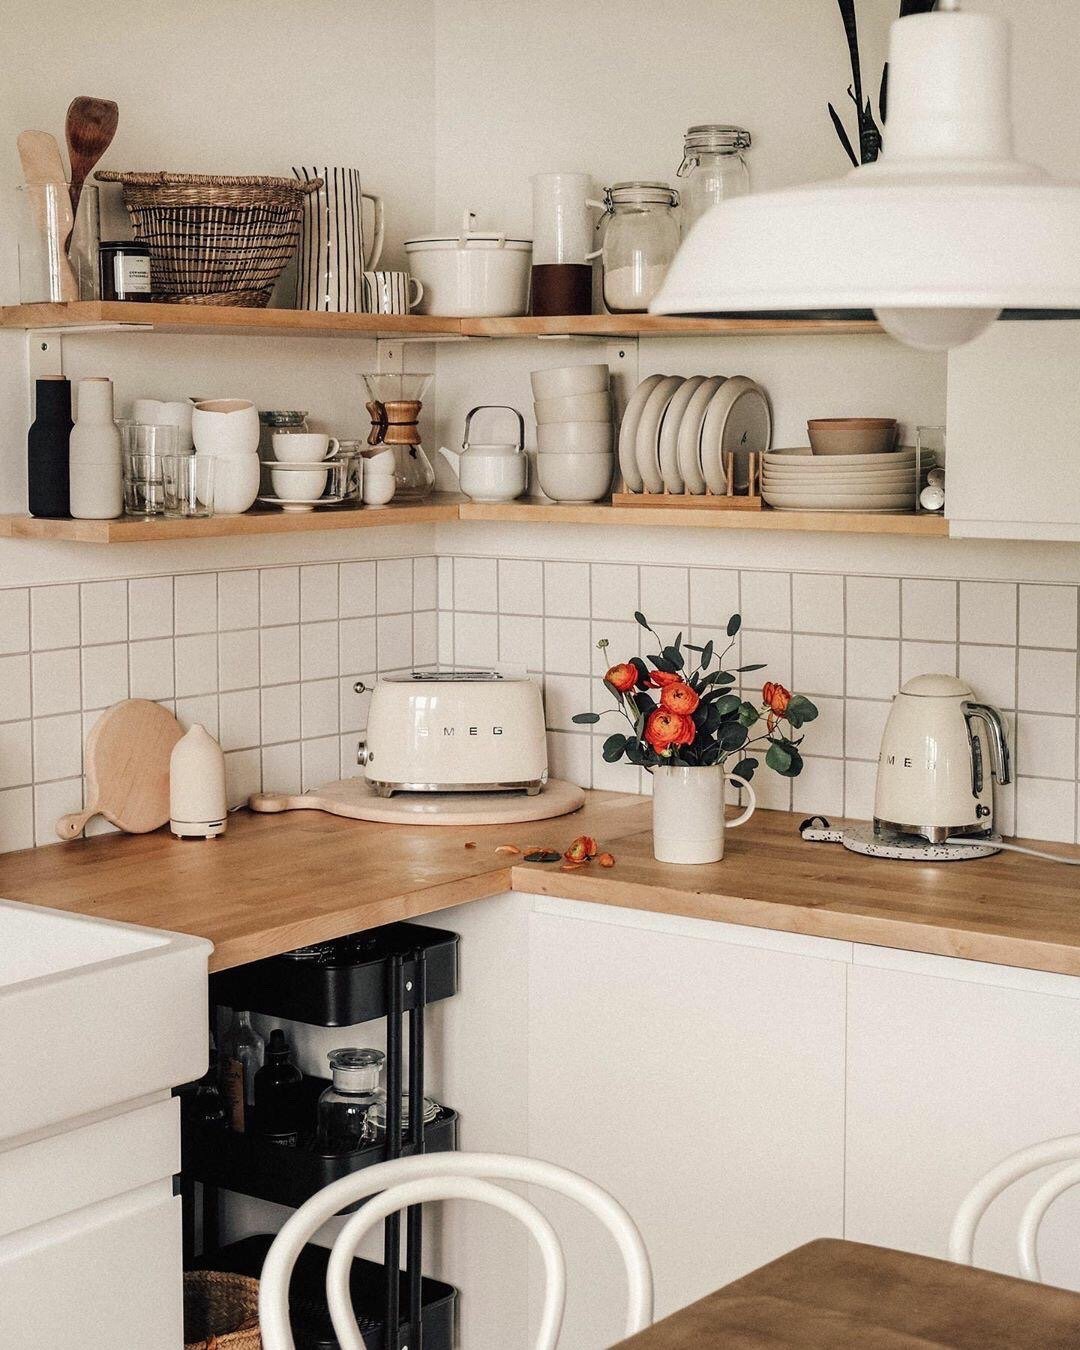 Phòng bếp nhỏ gọn, phù hợp với bố cục căn hộ, đặc biệt là dãy kệ mở cũng được thiết kế chữ L để tăng không gian lưu trữ mà không cần sử dụng hệ thống tủ bếp trên.